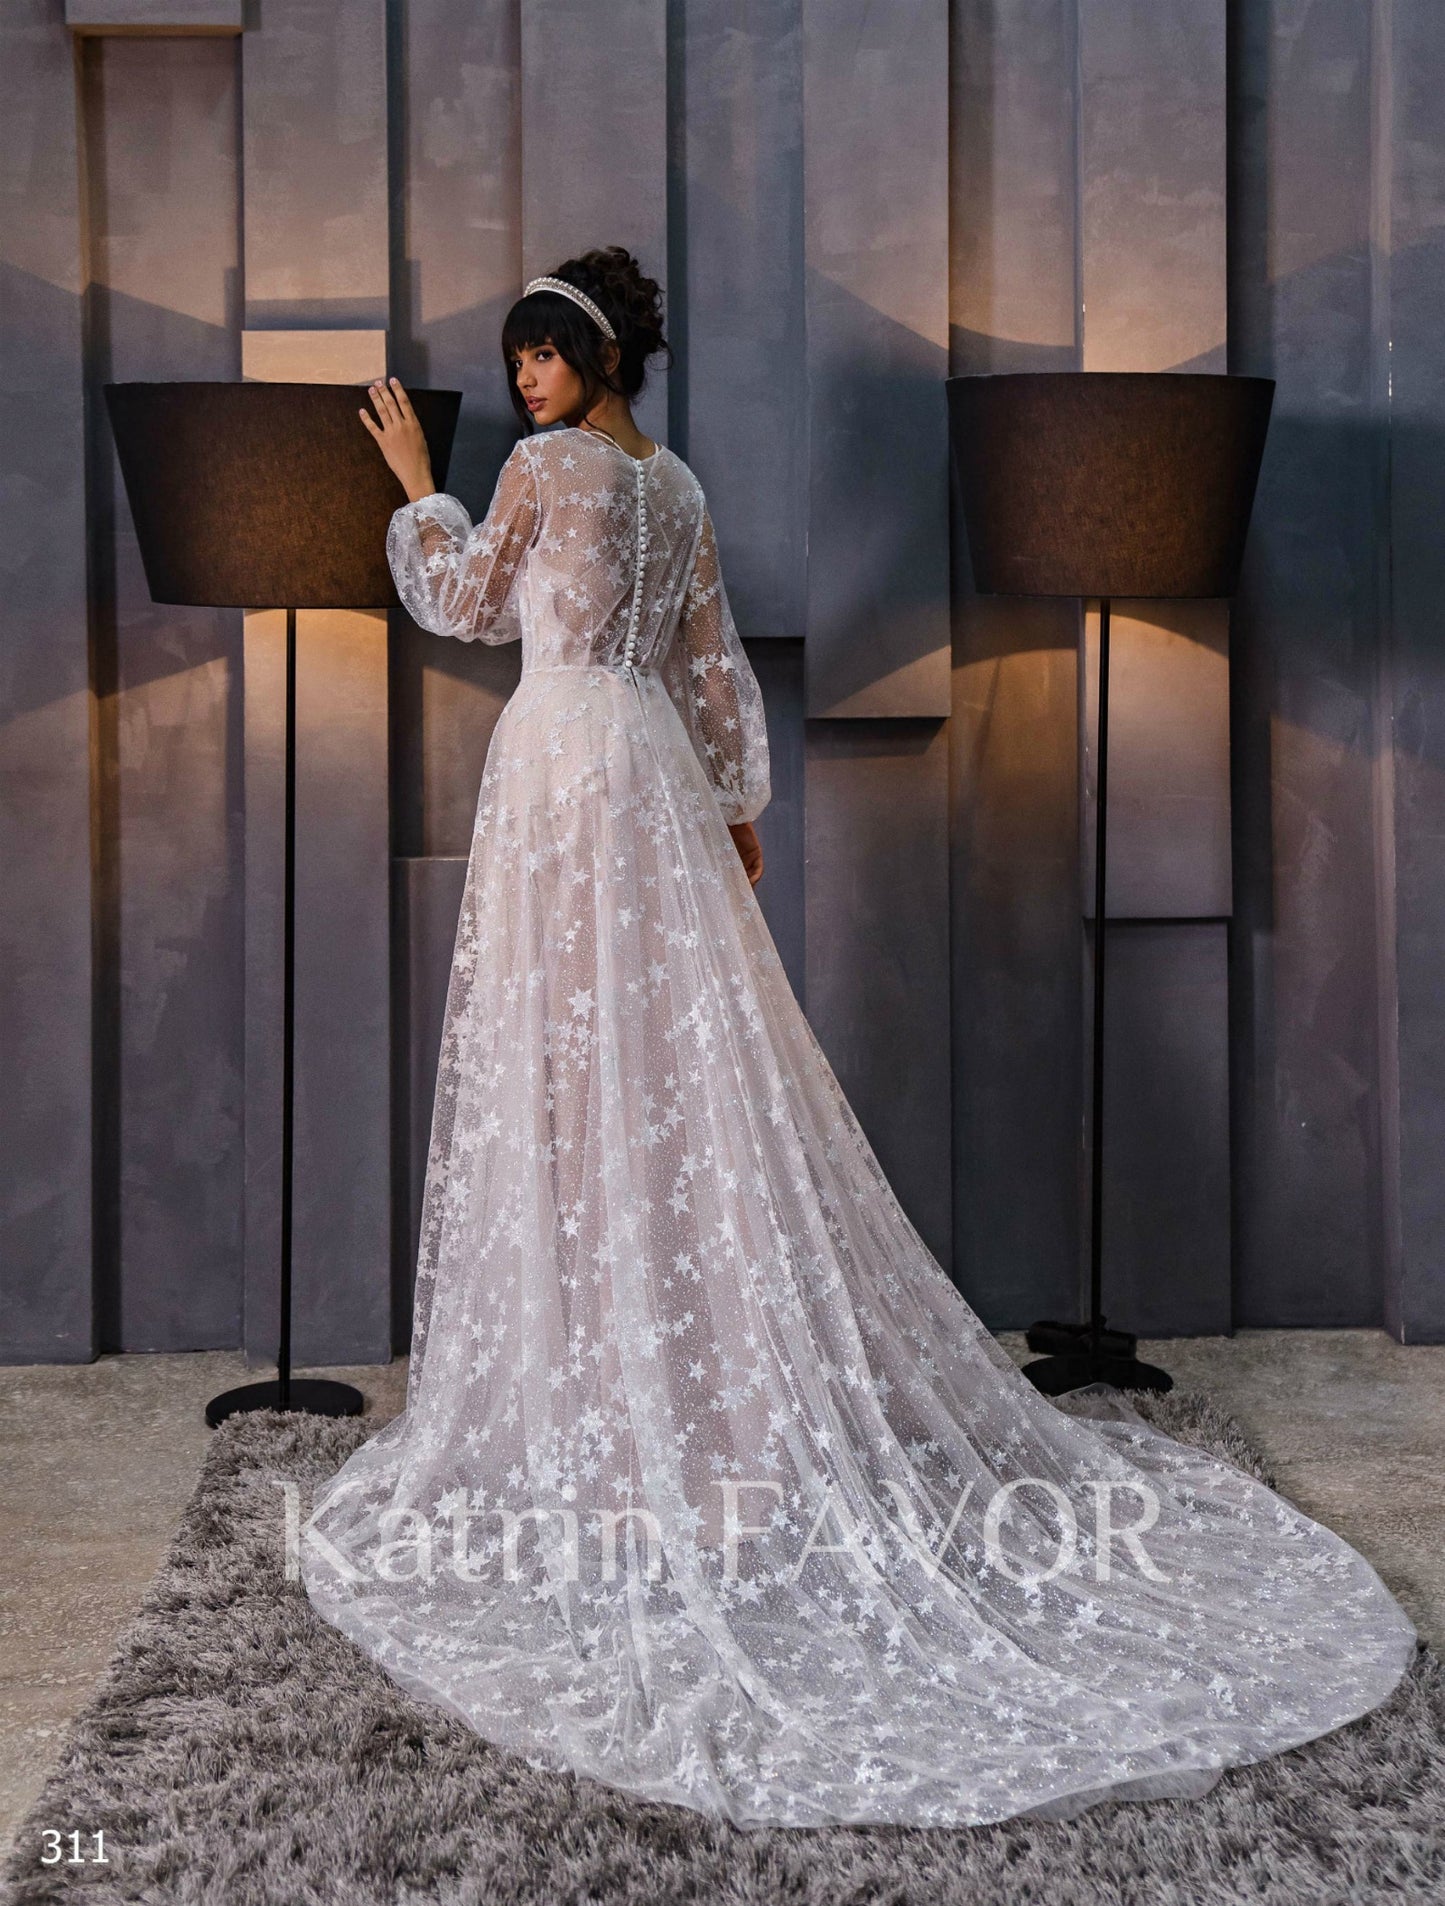 KatrinFAVORboutique-Star tulle celestial wedding dress